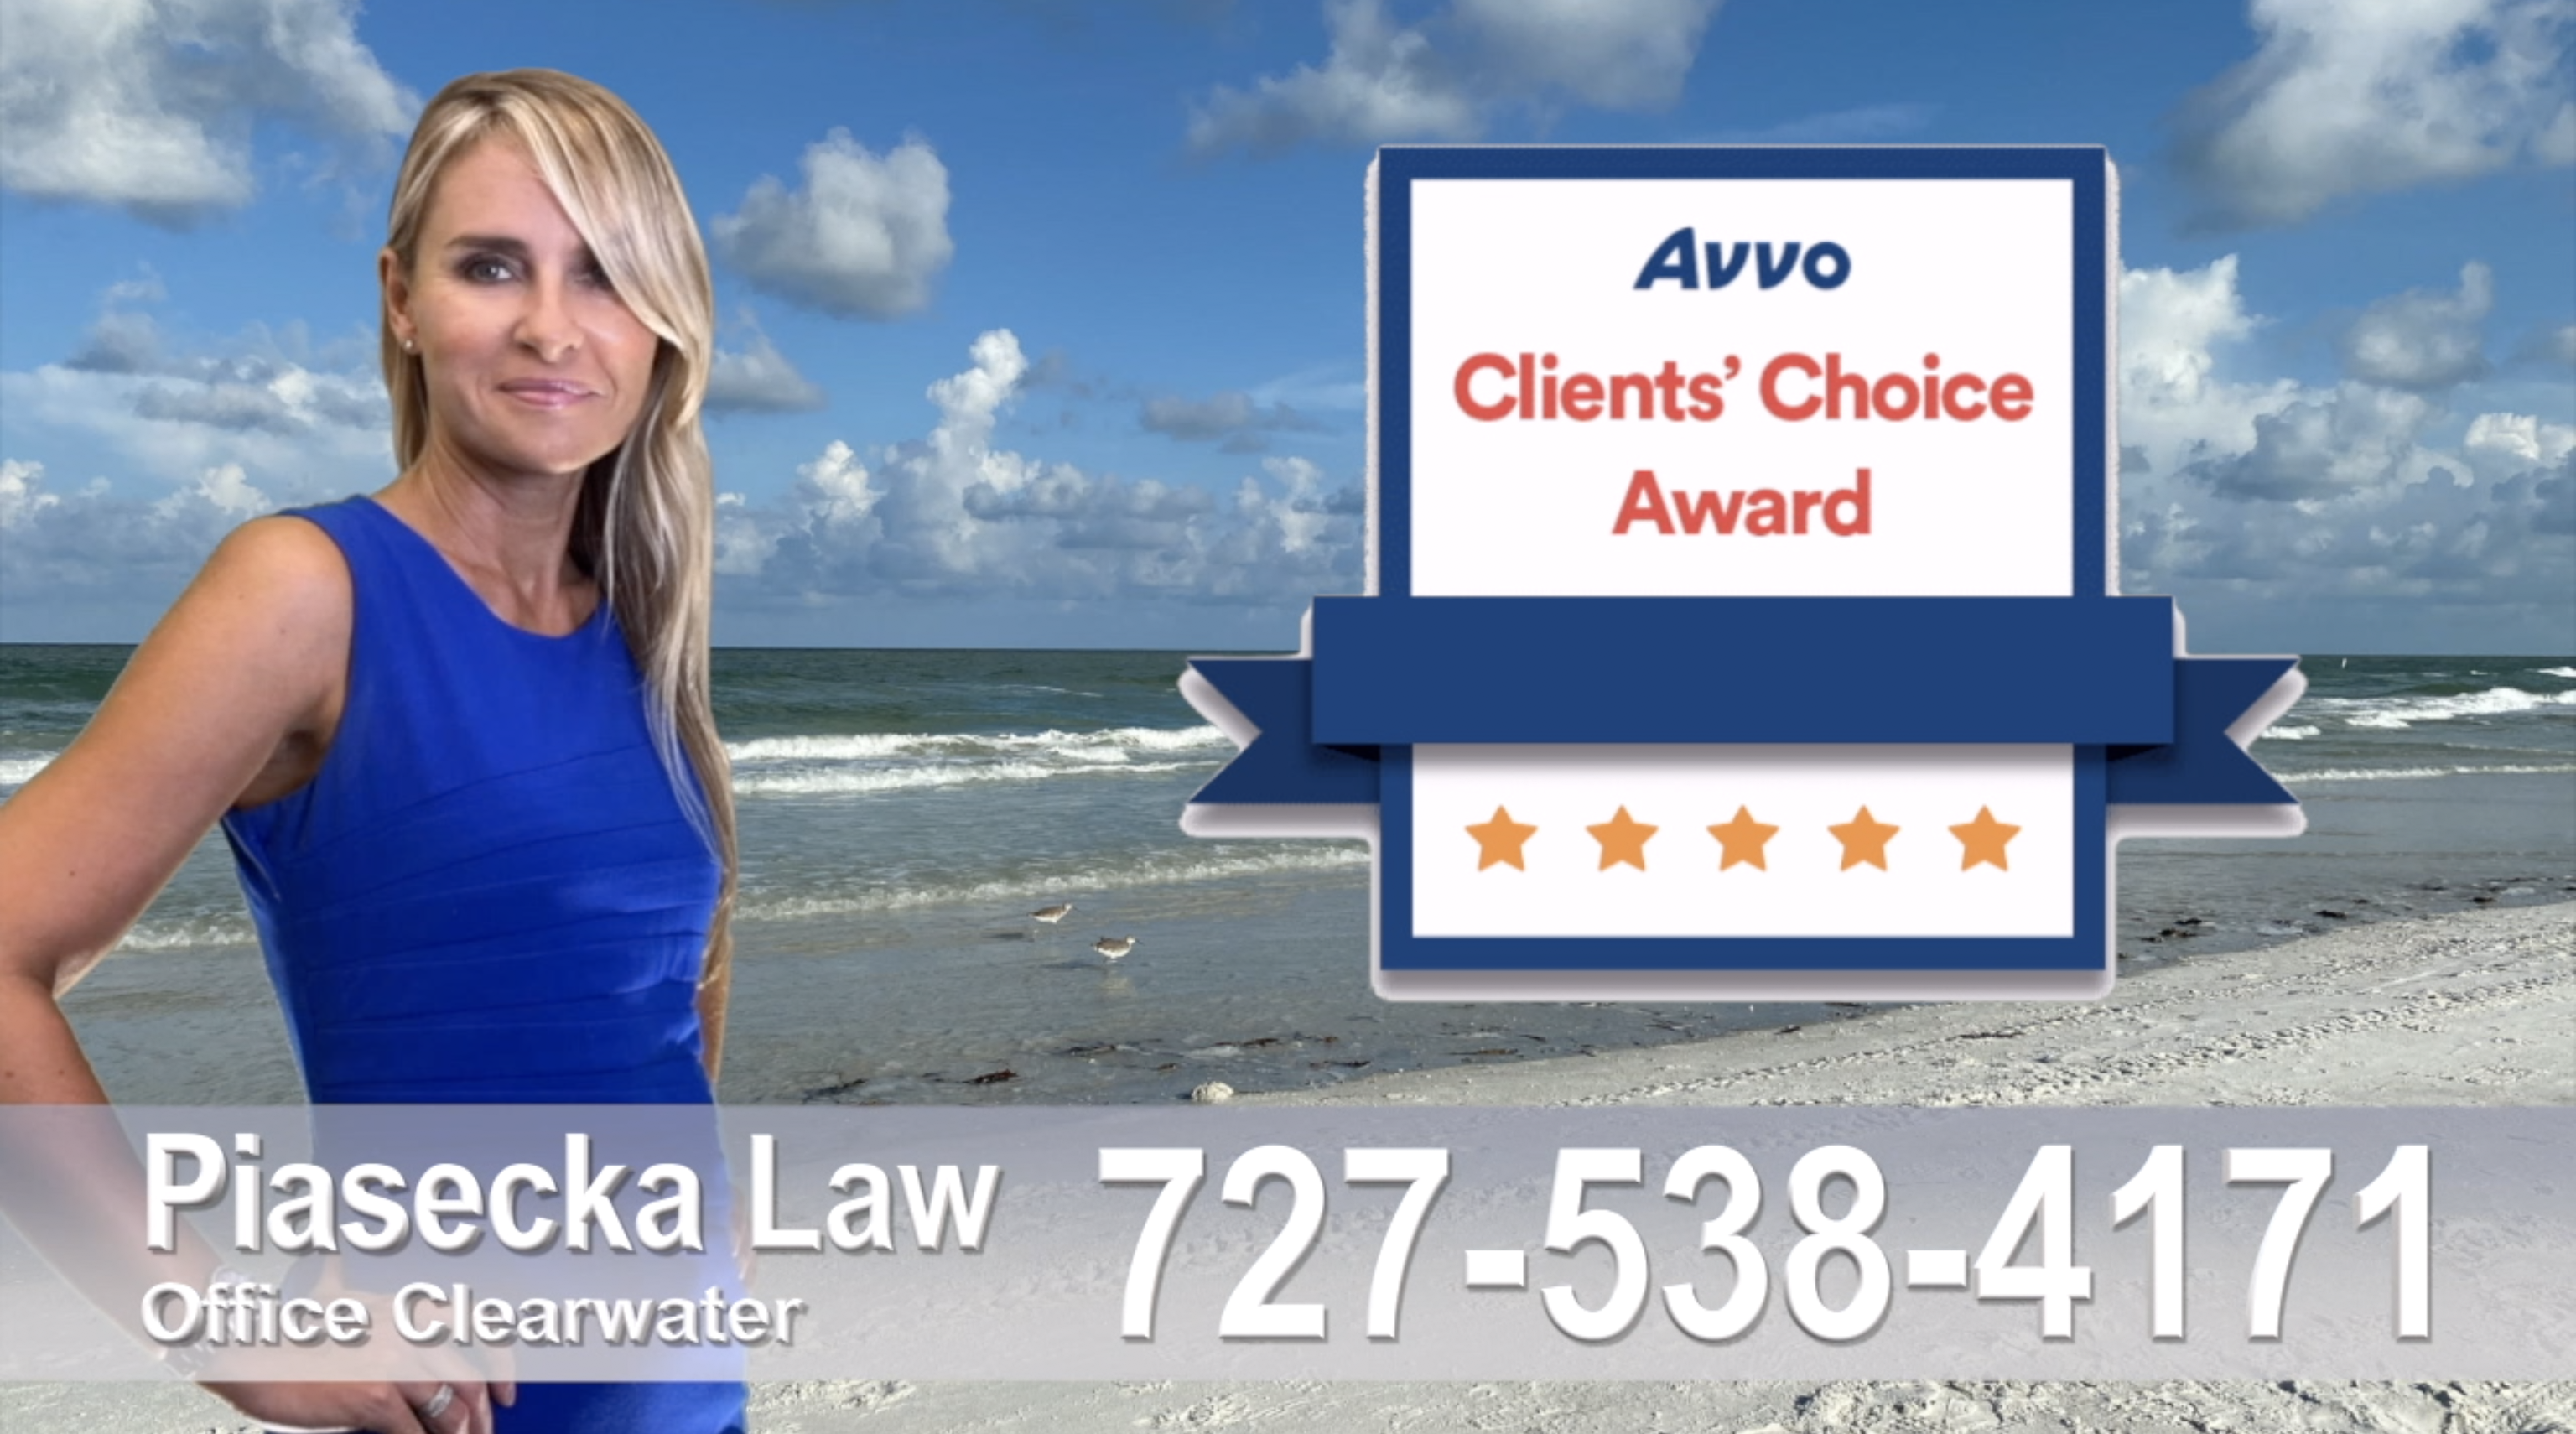 Polski Prawnik Indian Rocks Beach, Polish, attorney, lawyer, clients, reviews, award, avvo